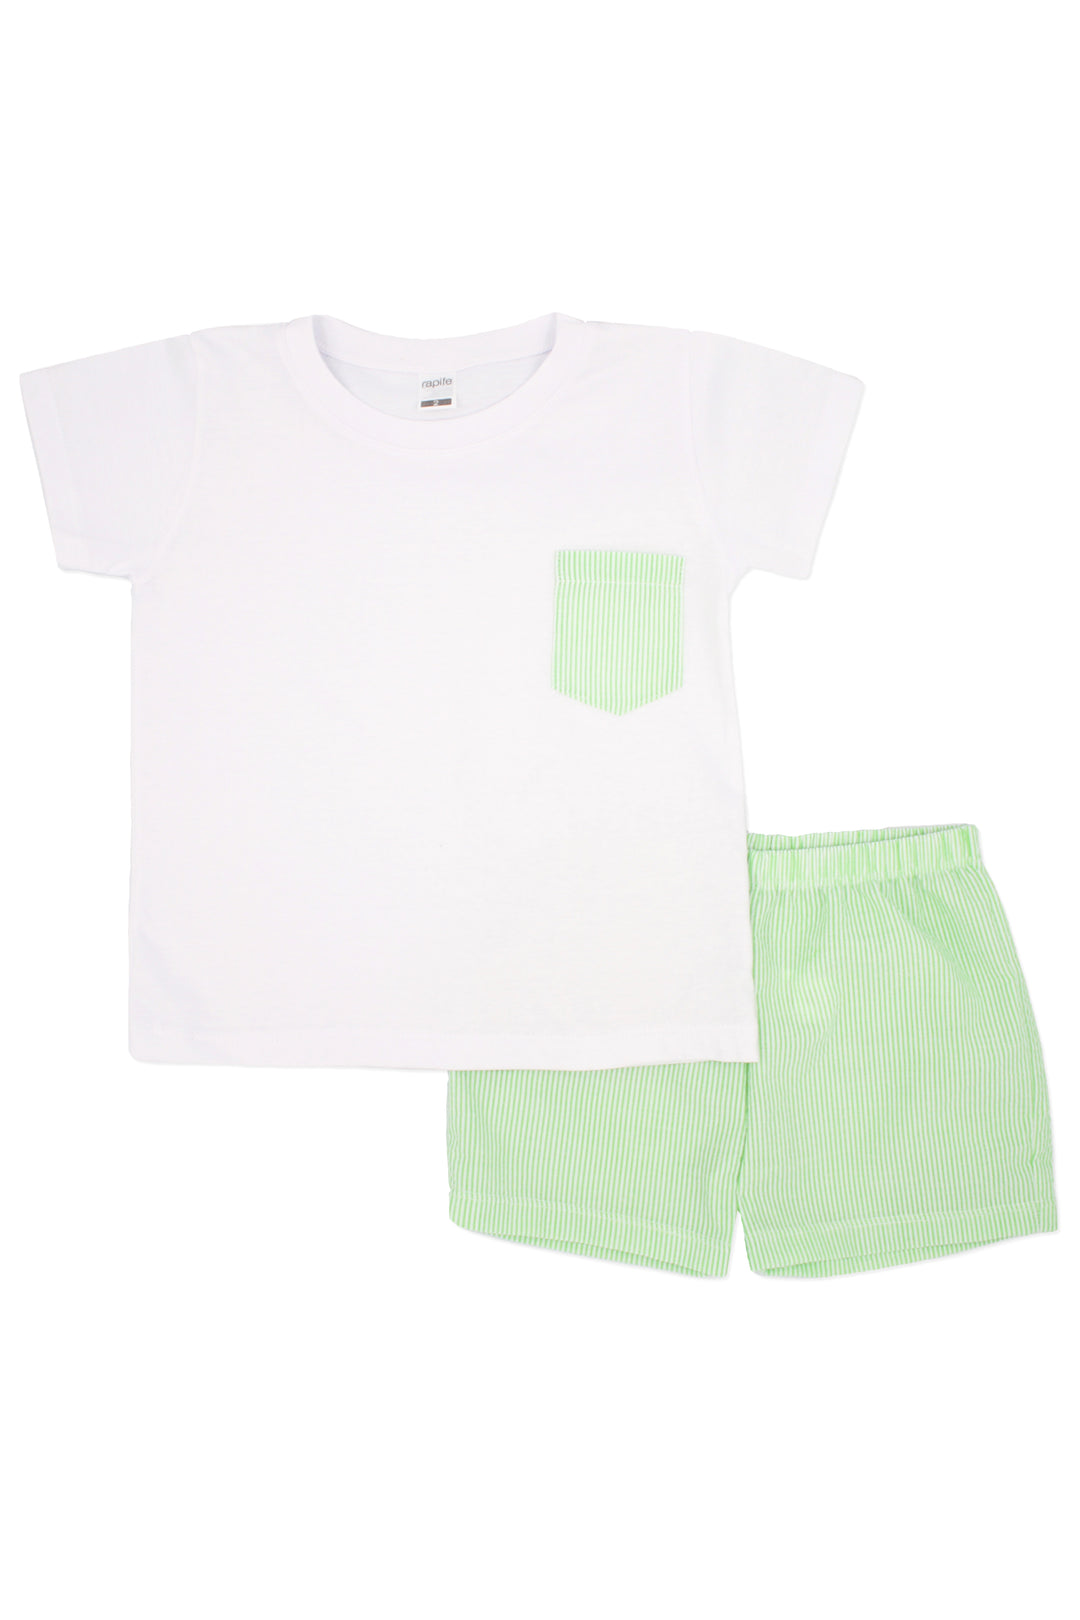 Printed Shorts - Apple Green